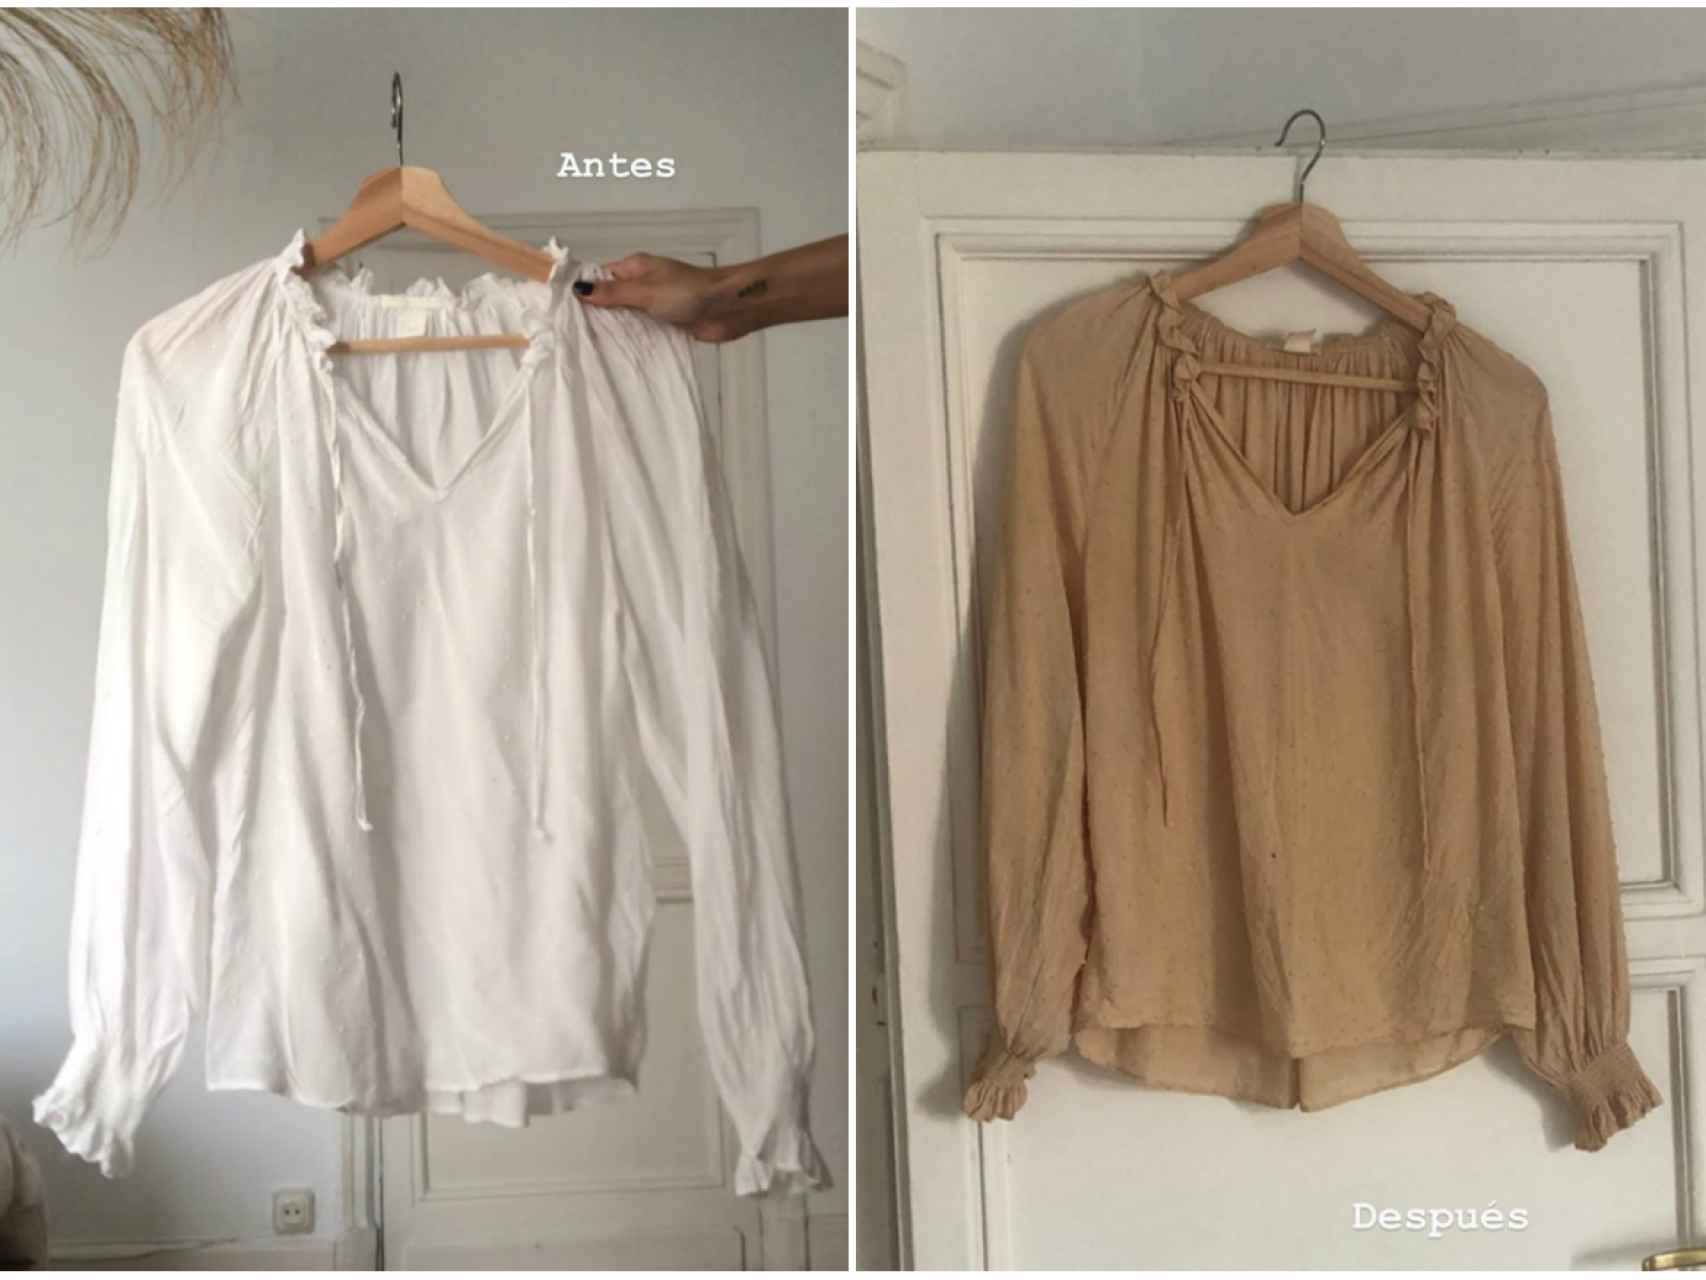 La camisa de Itziar Aguilera, antes y después de teñirla con cebolla.